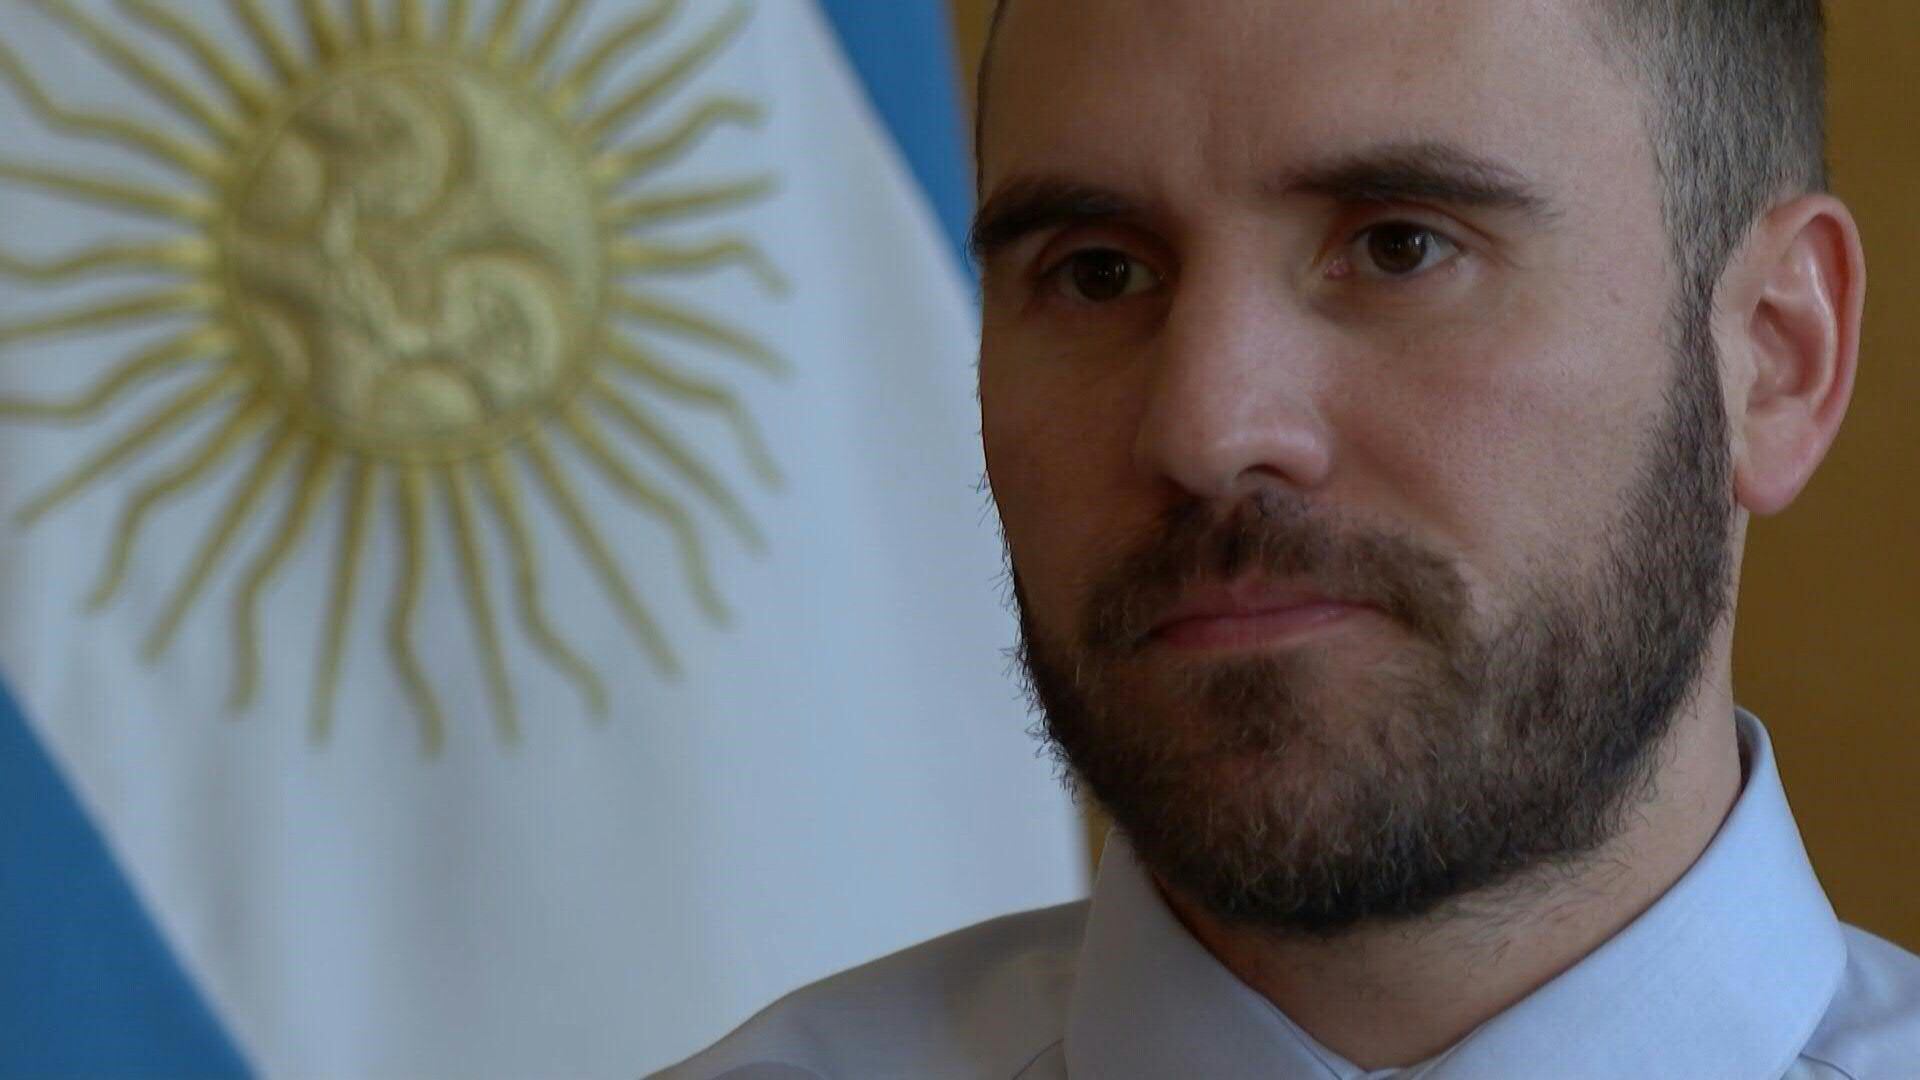 El ministro de Economía de Argentina, Martín Guzmán, anunció el sábado su renuncia al cargo en una carta al presidente Alberto Fernández que divulgó en su cuenta de Twitter.